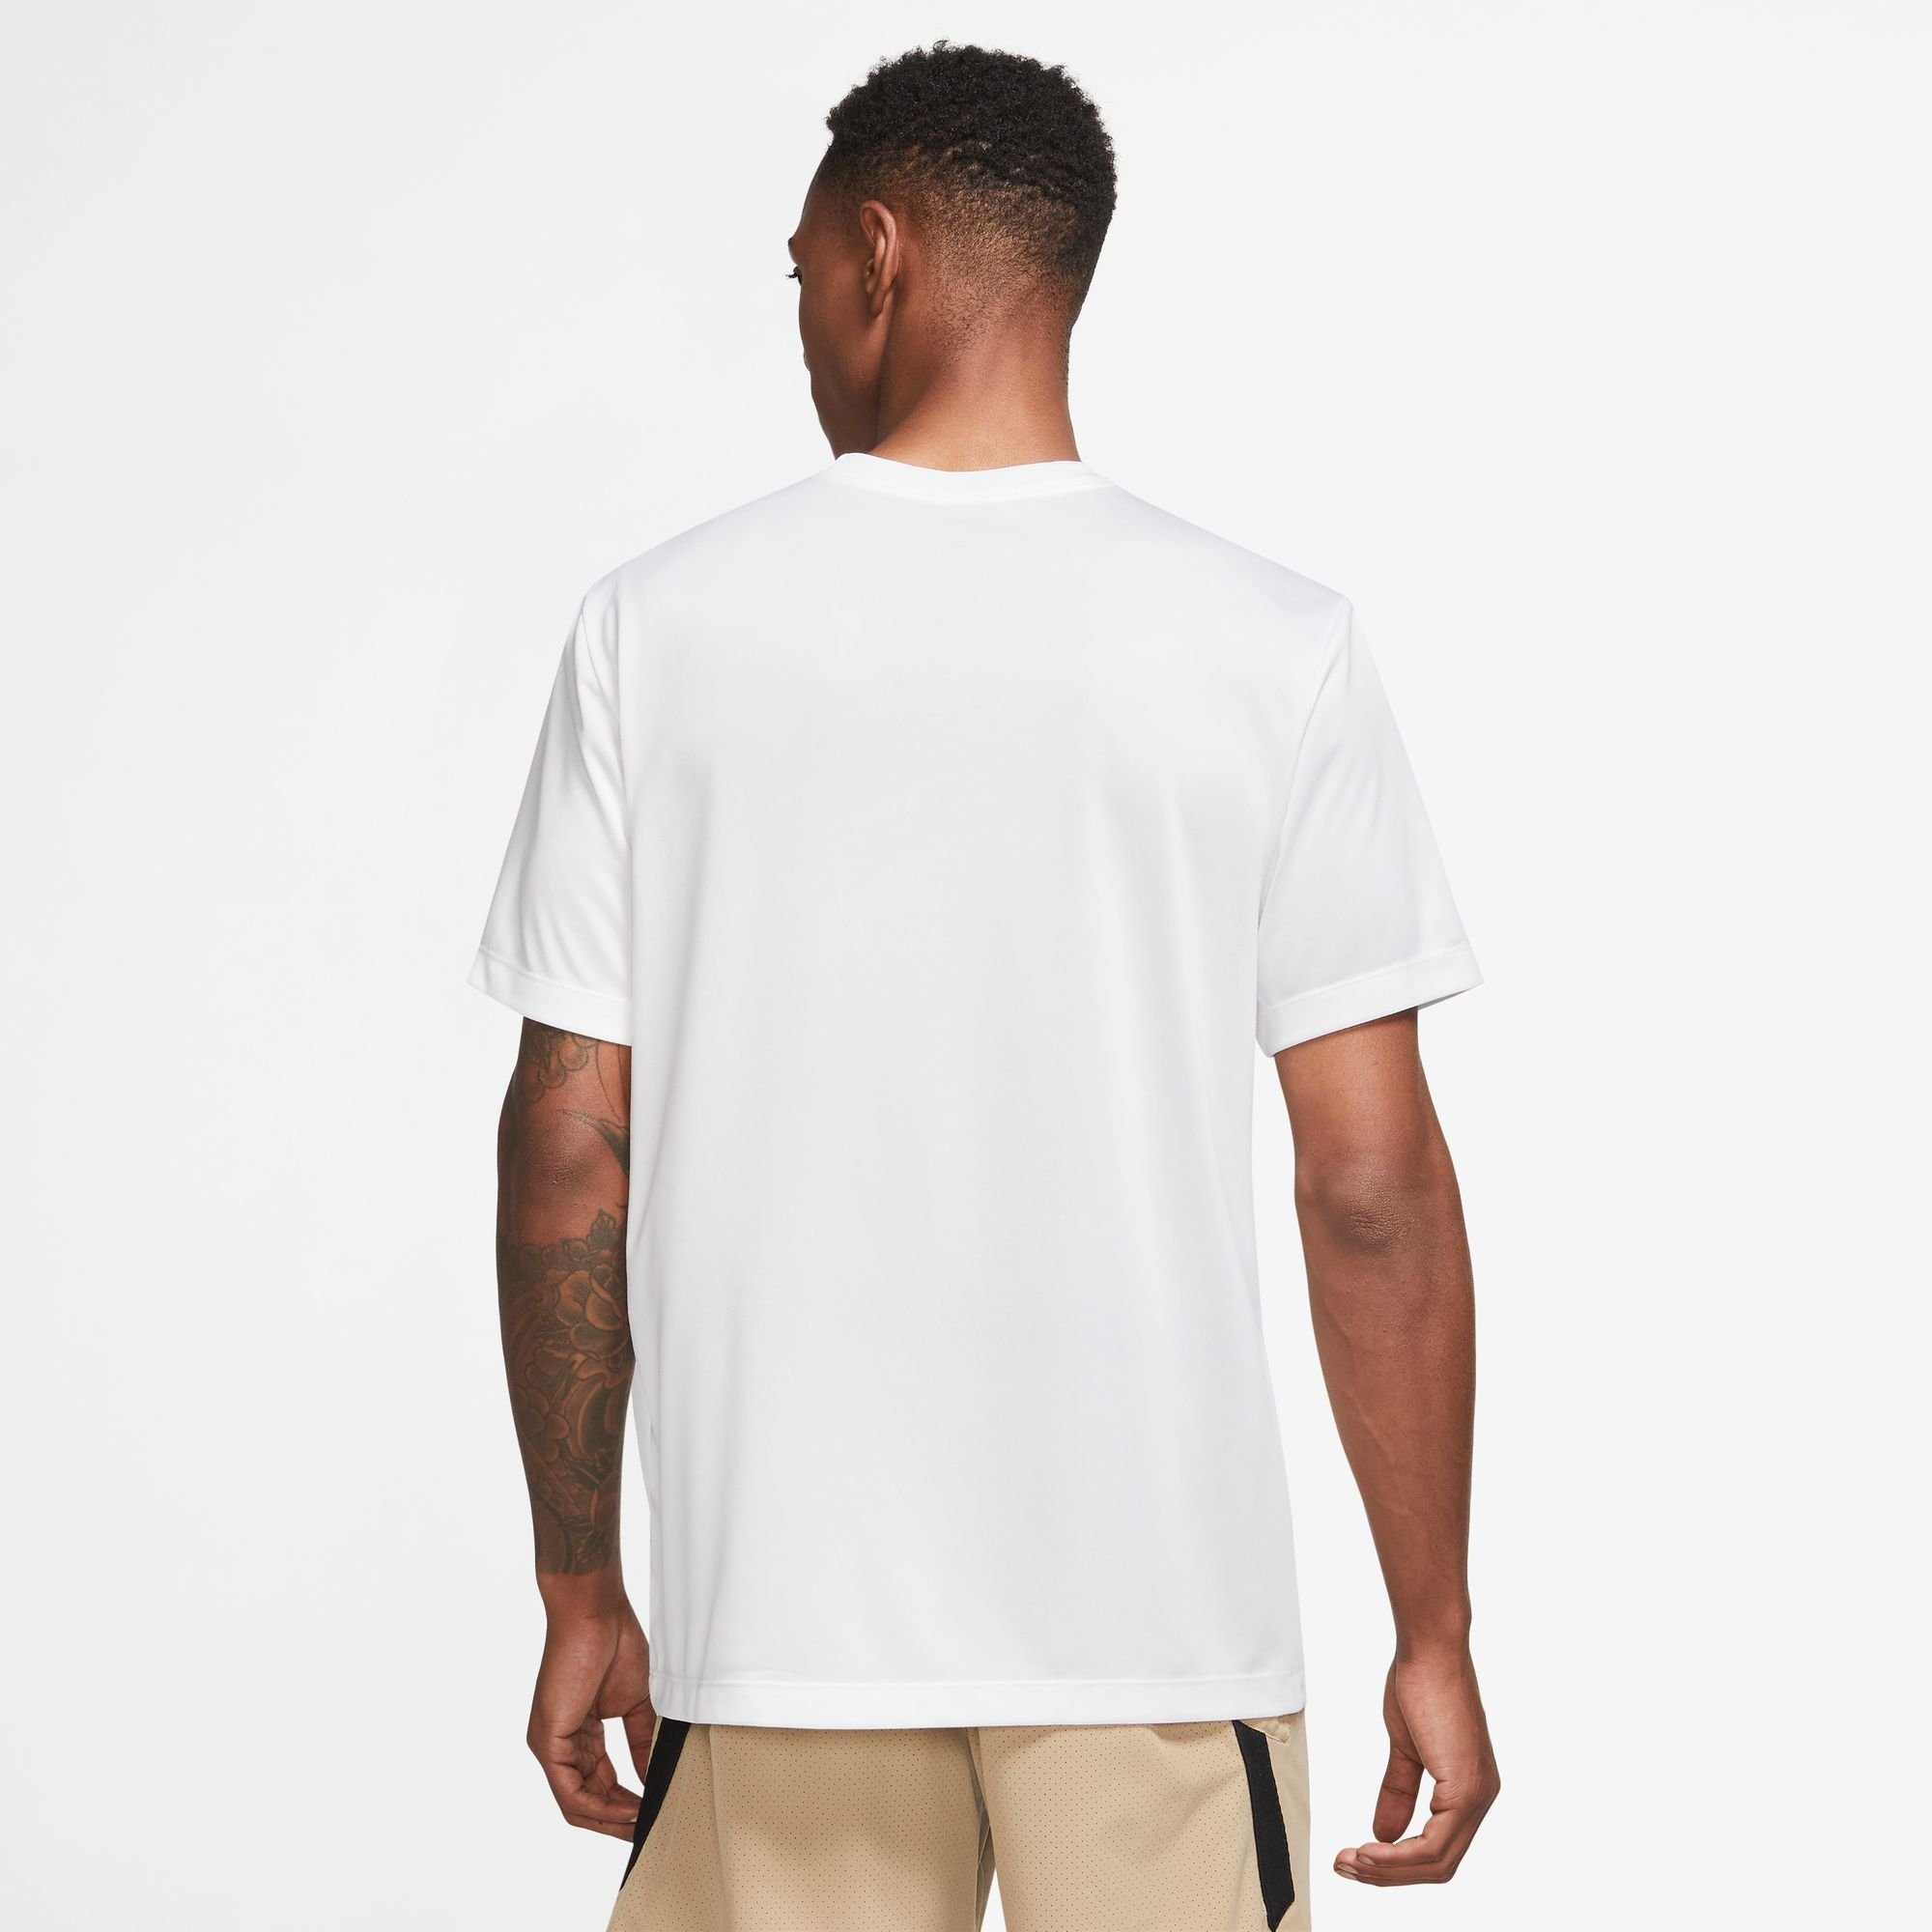 Nike Trainingsshirt DRI-FIT WHITE/BLACK MEN'S FITNESS T-SHIRT LEGEND